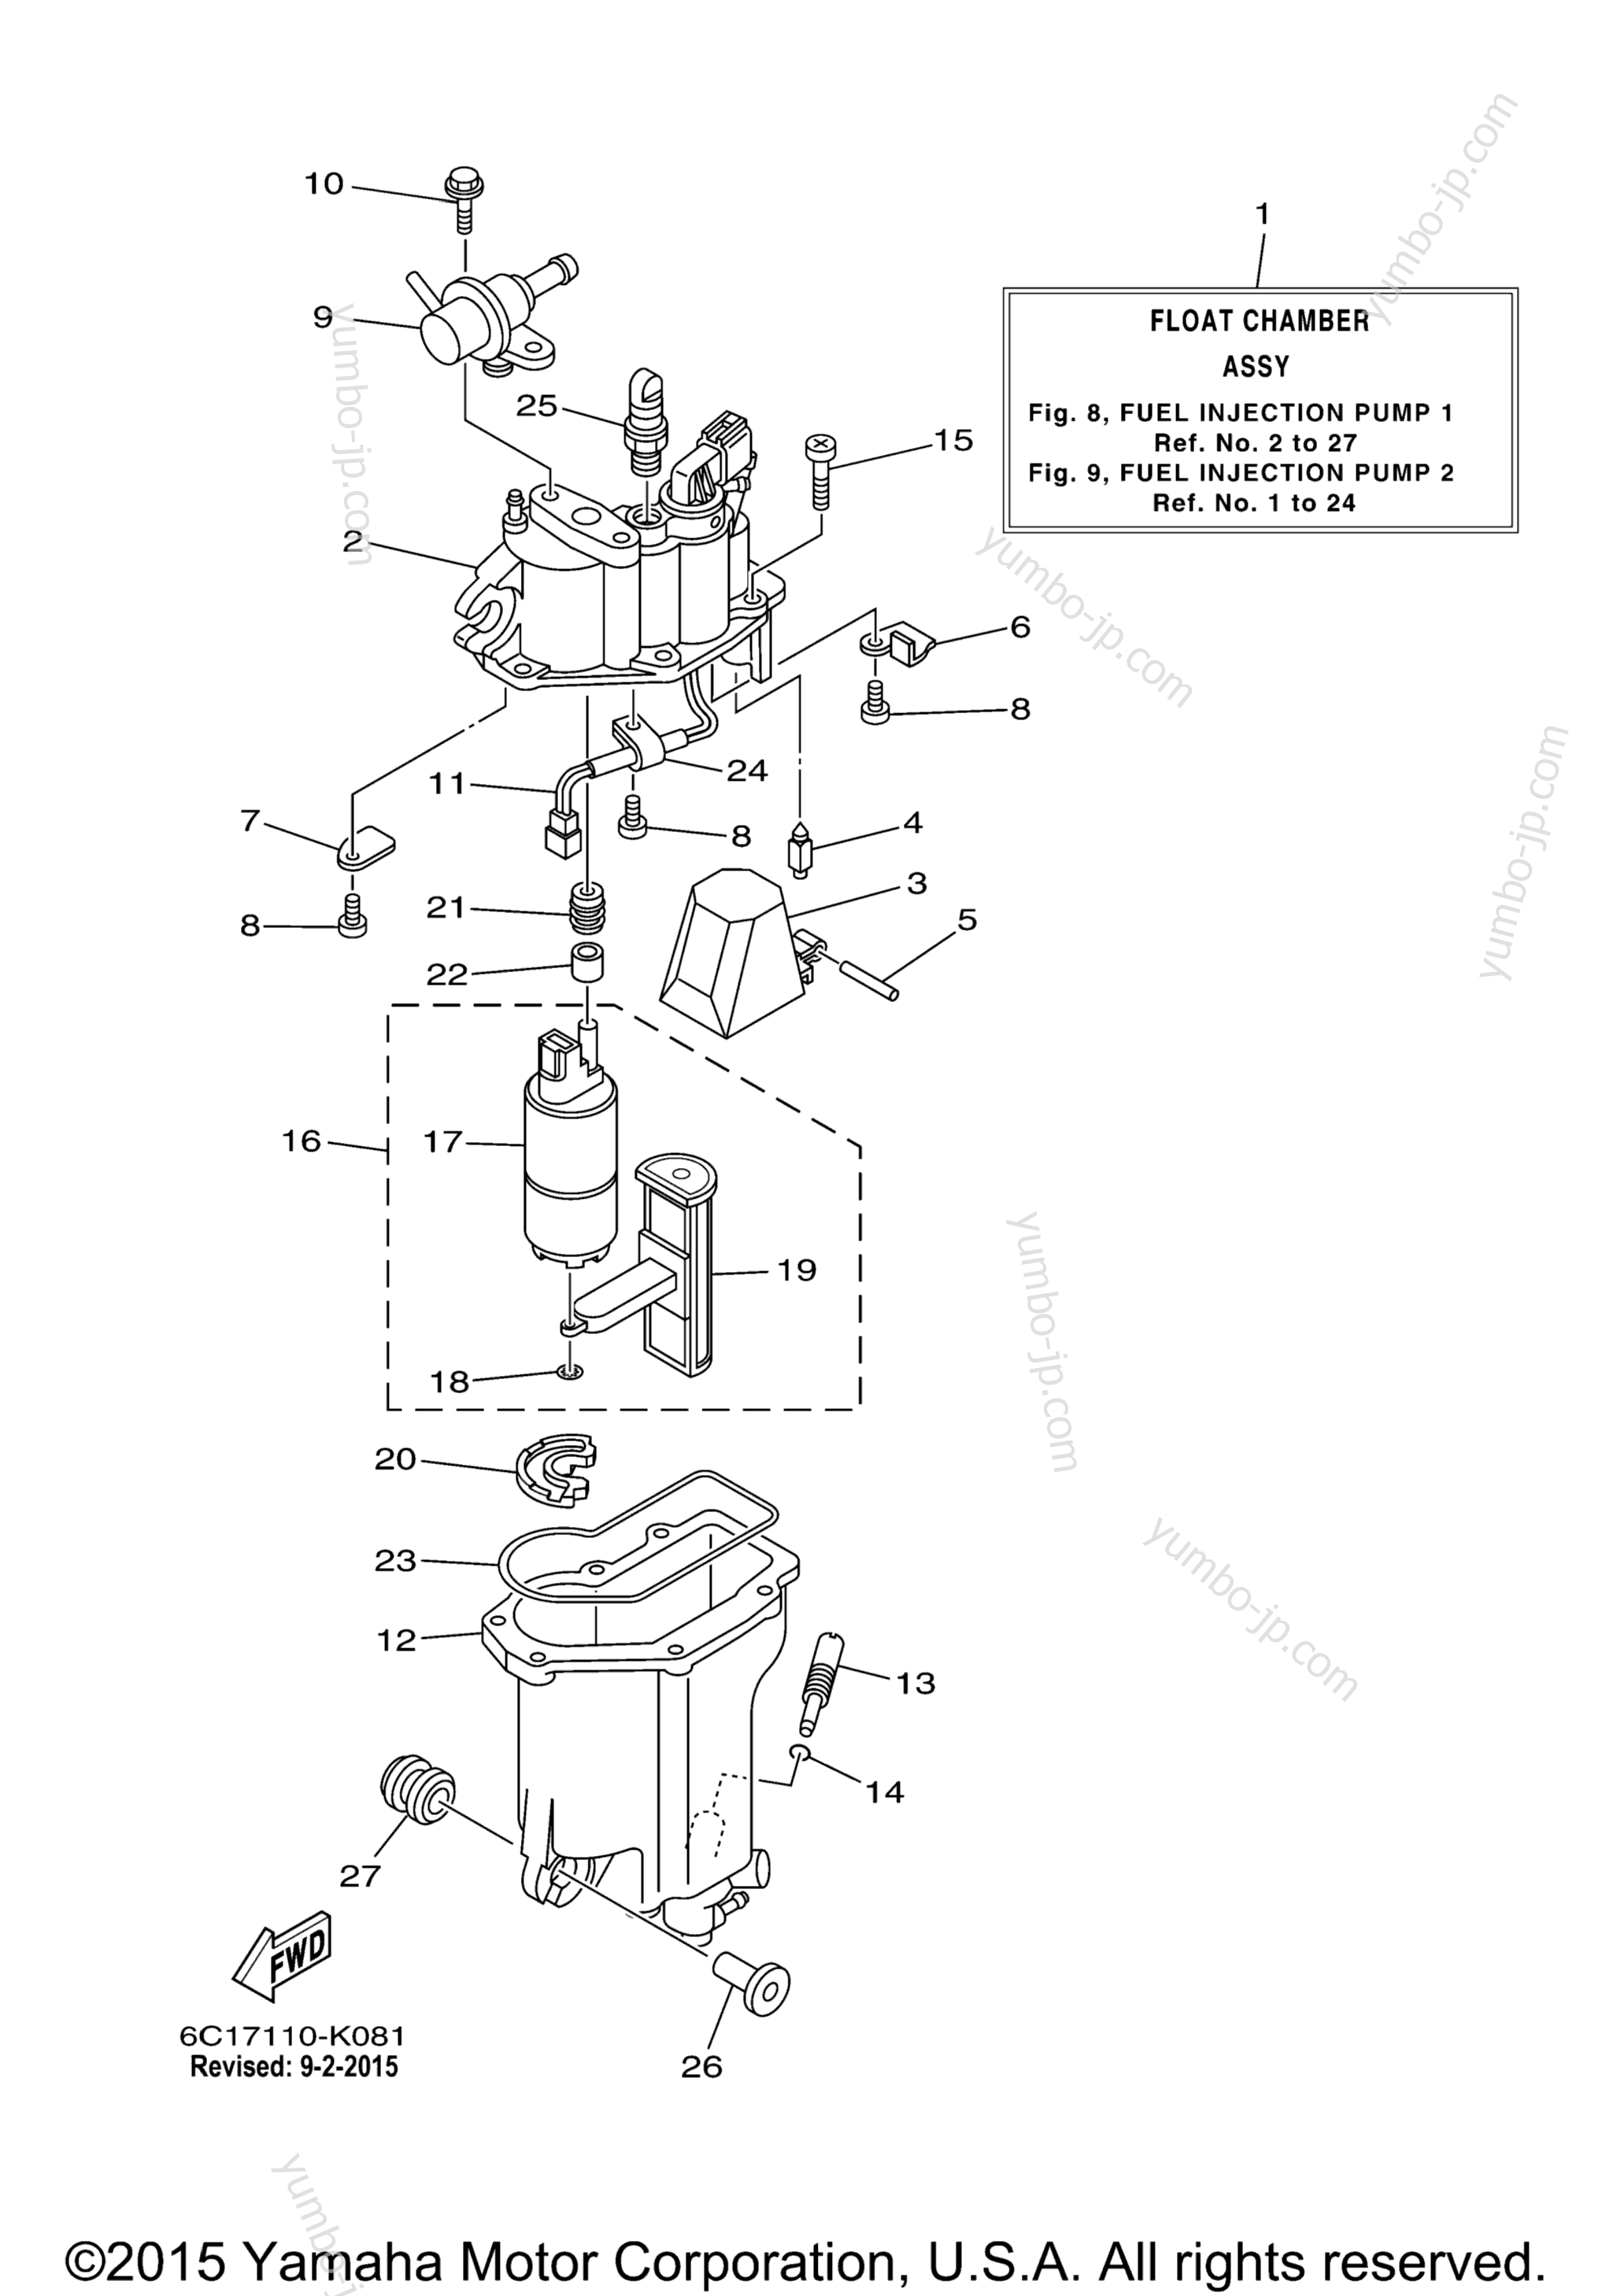 Fuel Injection Pump 1 для лодочных моторов YAMAHA F60TLR_041 (0411) 2006 г.